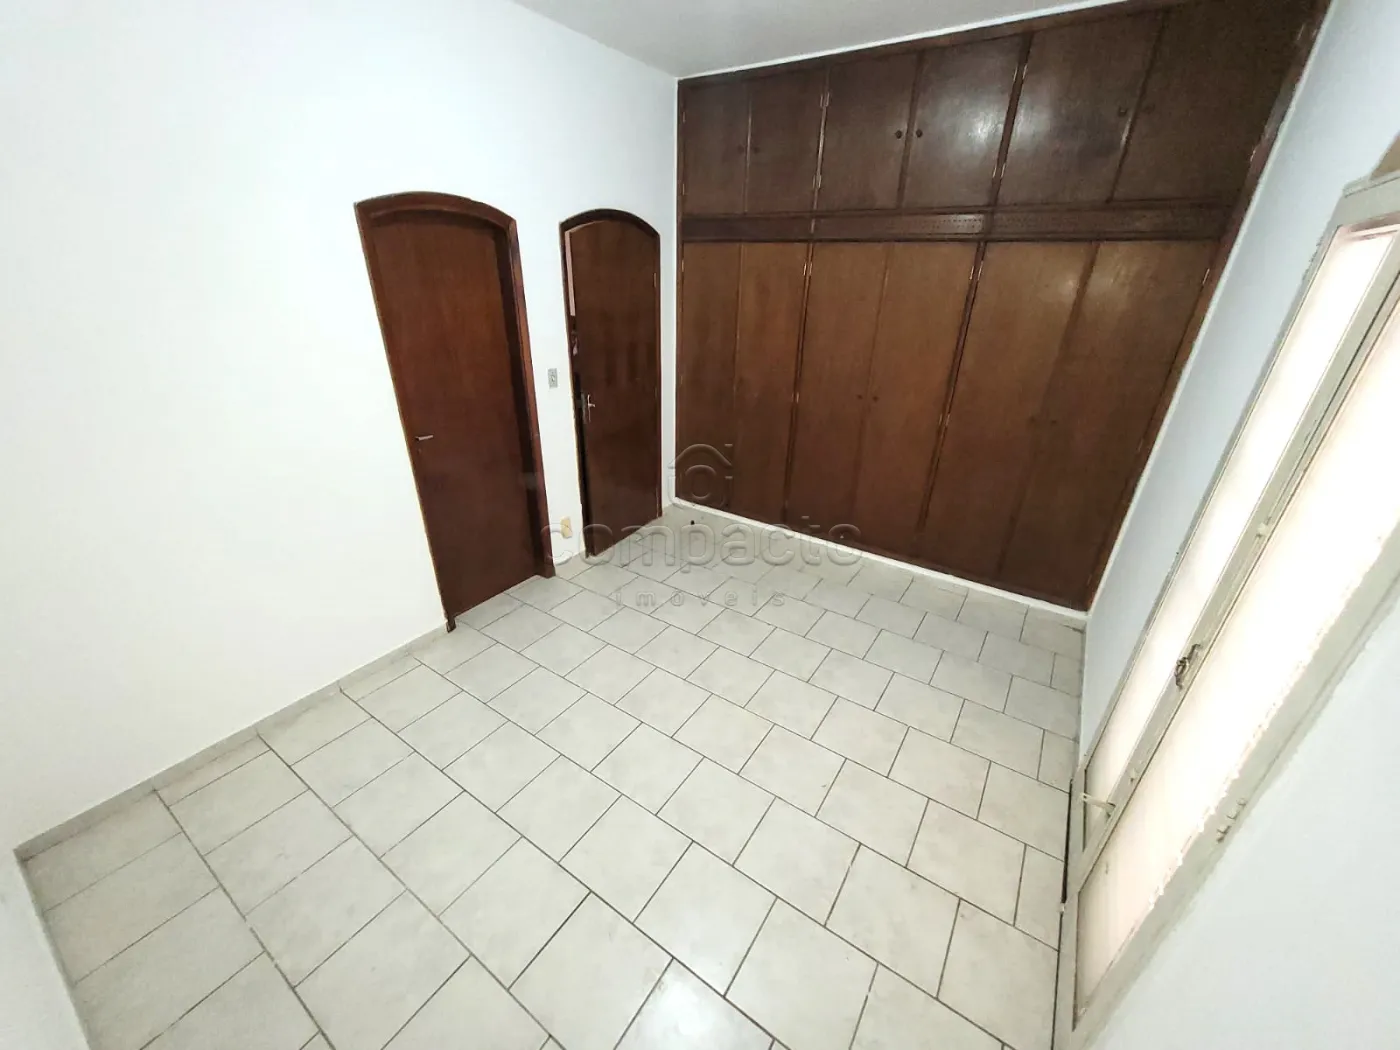 Alugar Casa / Padrão em São José do Rio Preto R$ 3.000,00 - Foto 16